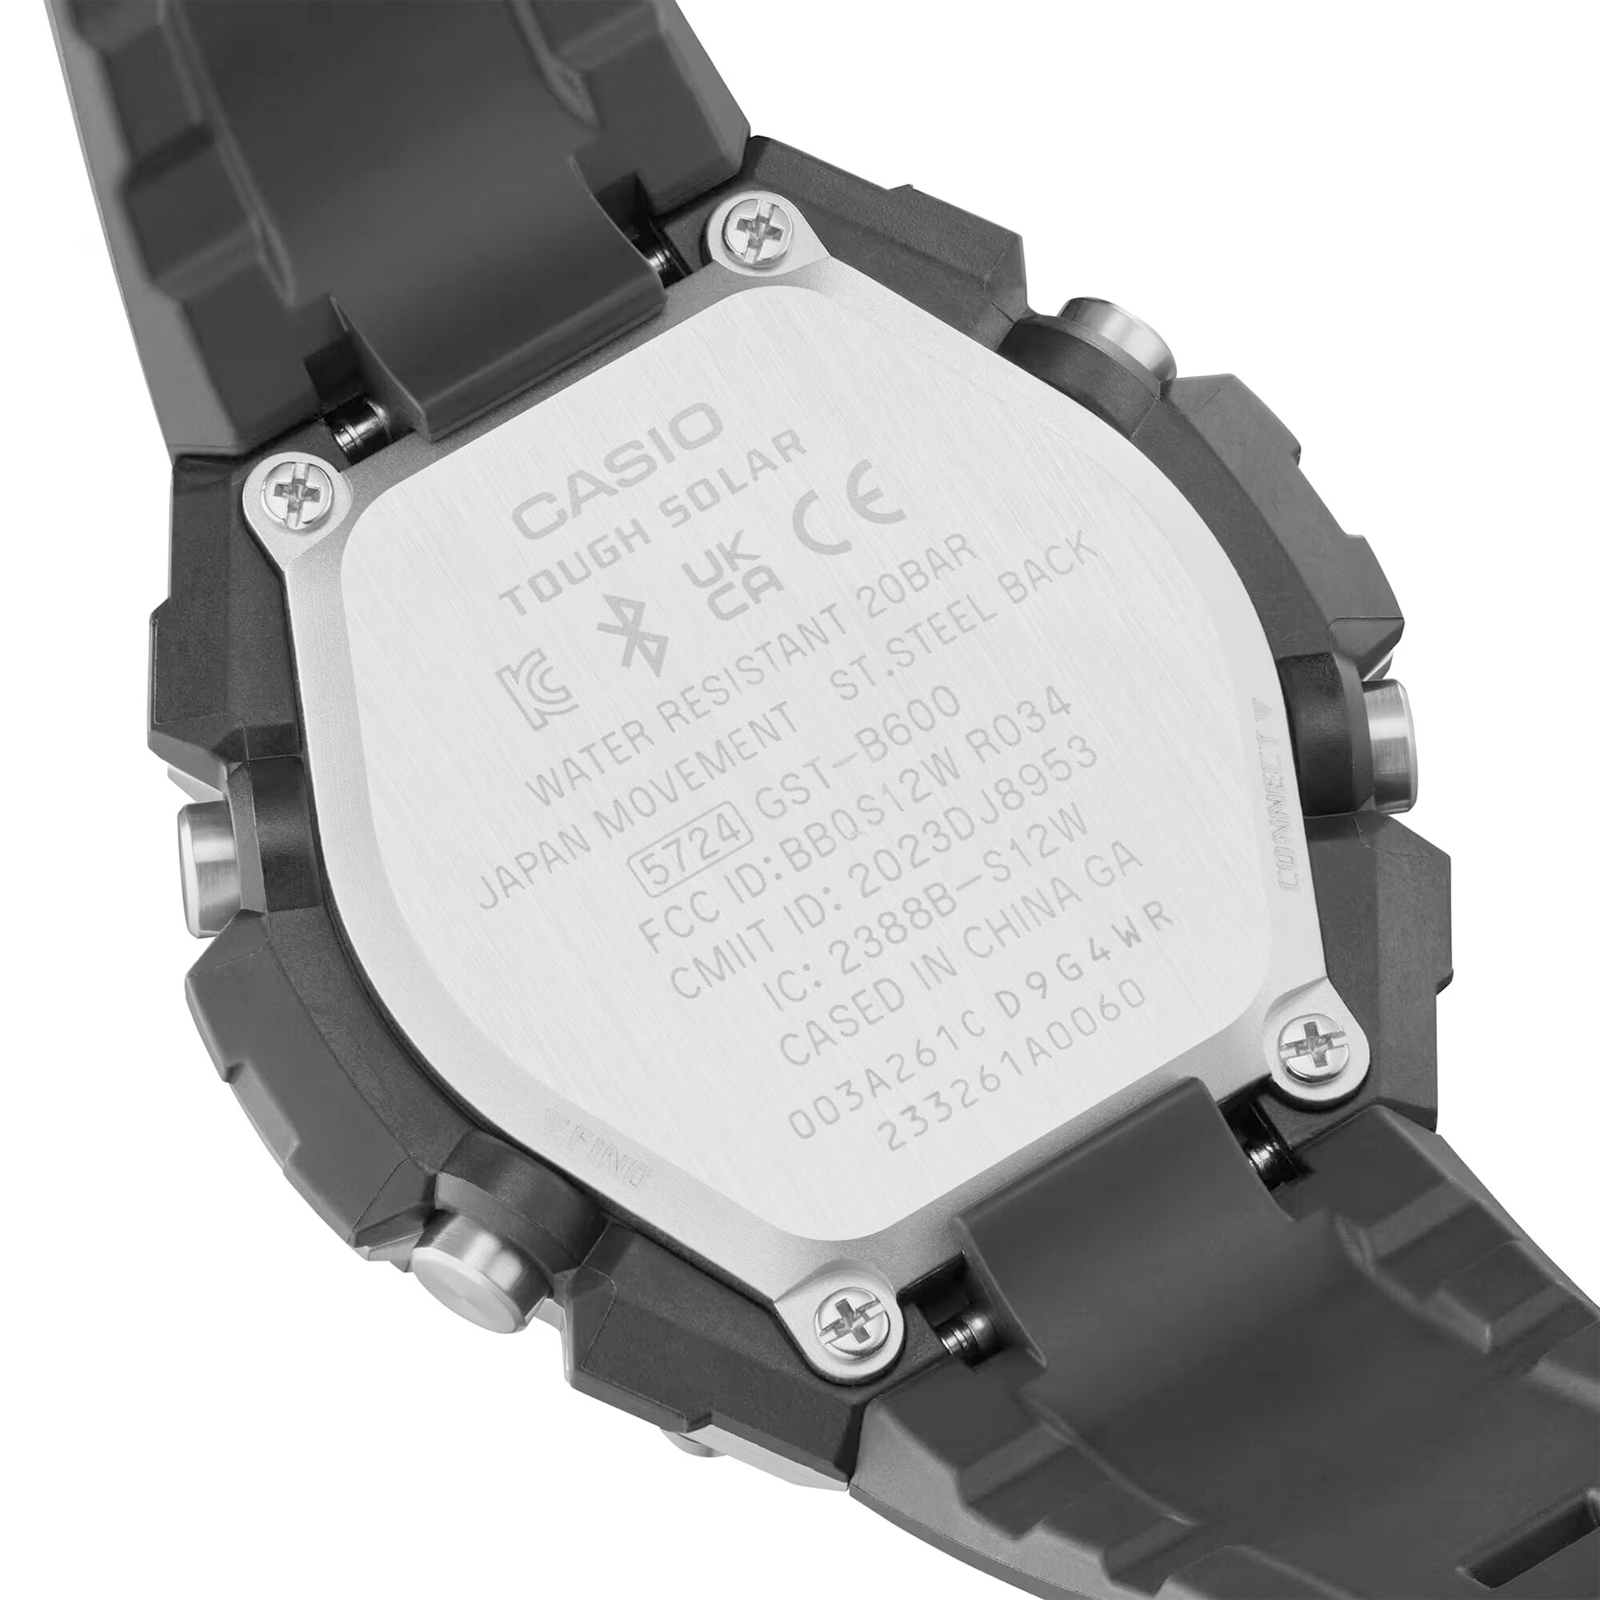 Reloj G-SHOCK GST-B600A-1A6 Resina/Acero Hombre Plateado